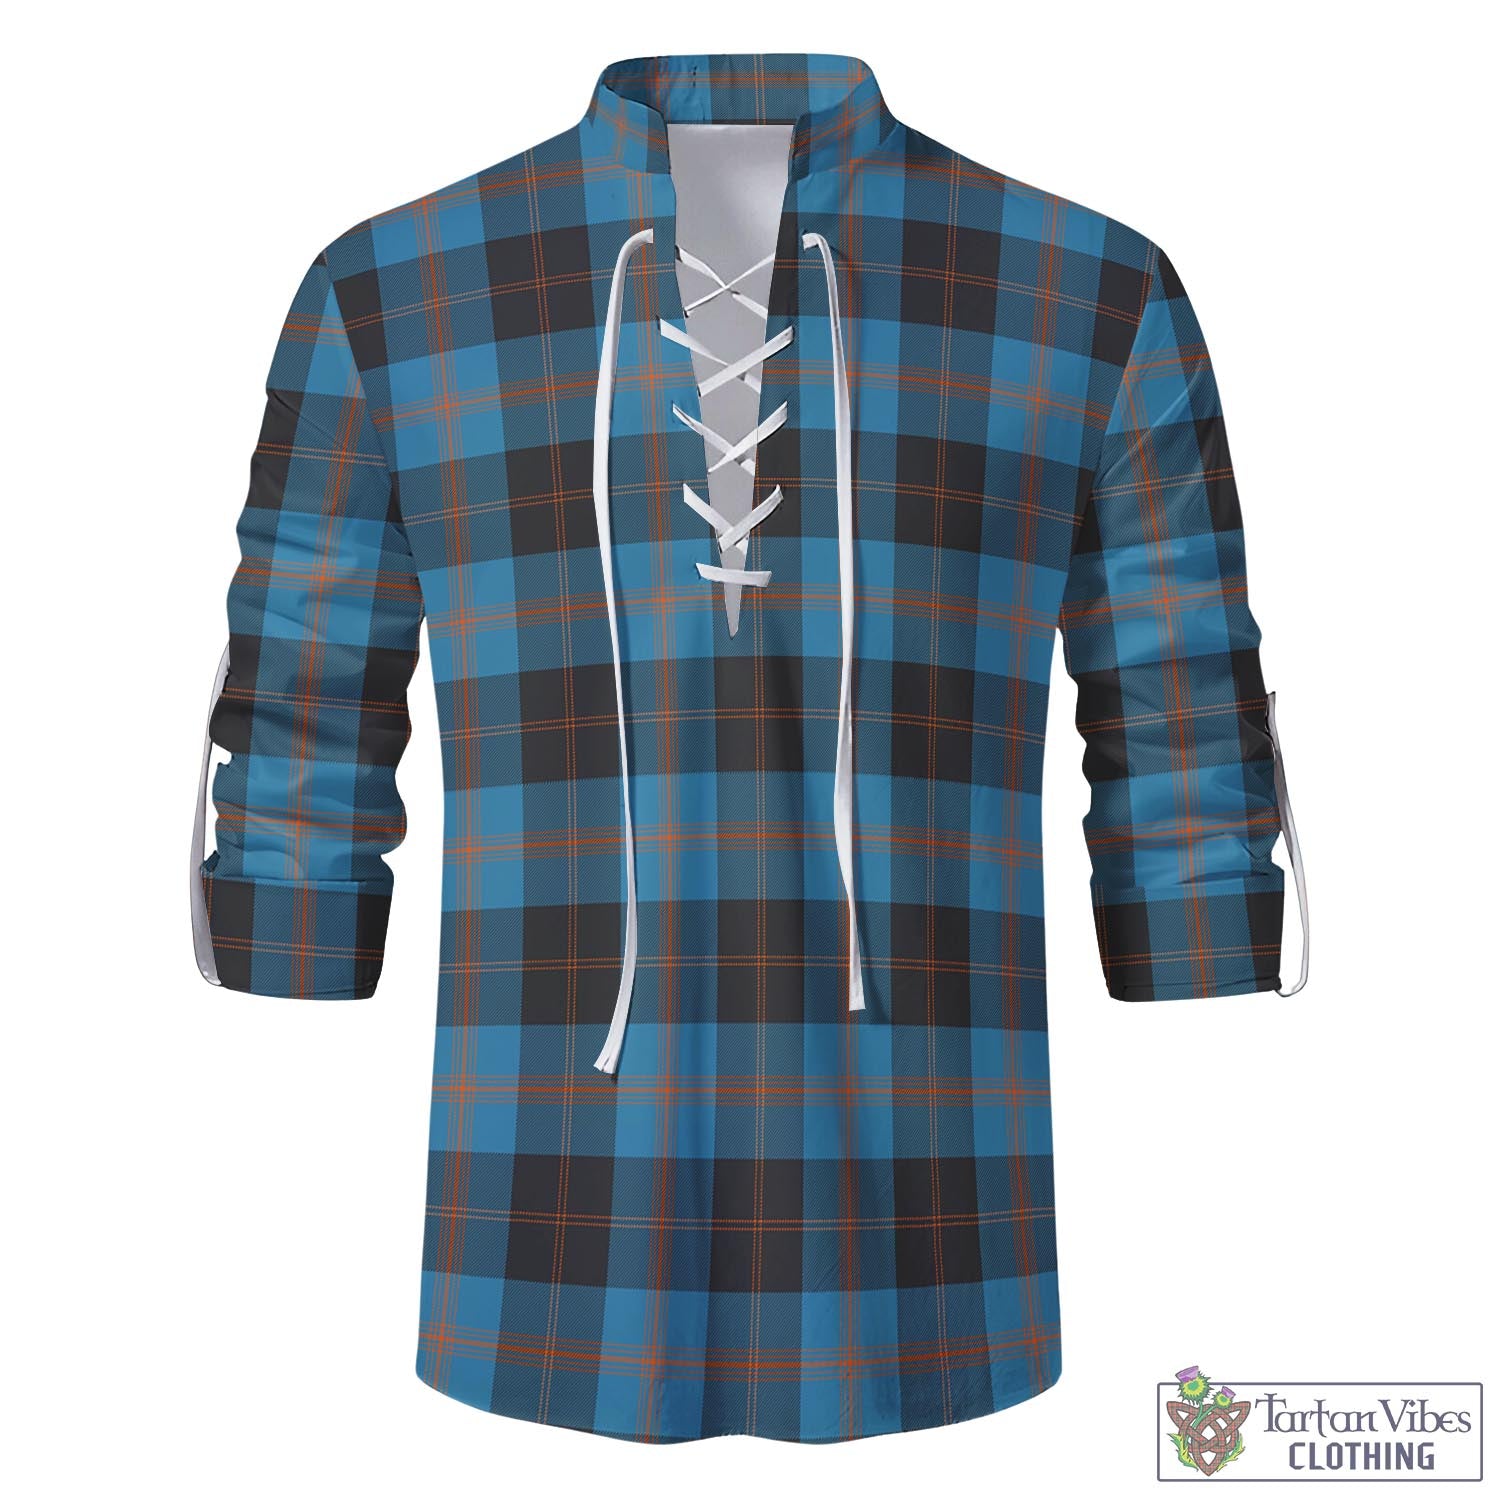 Tartan Vibes Clothing Garden Tartan Men's Scottish Traditional Jacobite Ghillie Kilt Shirt